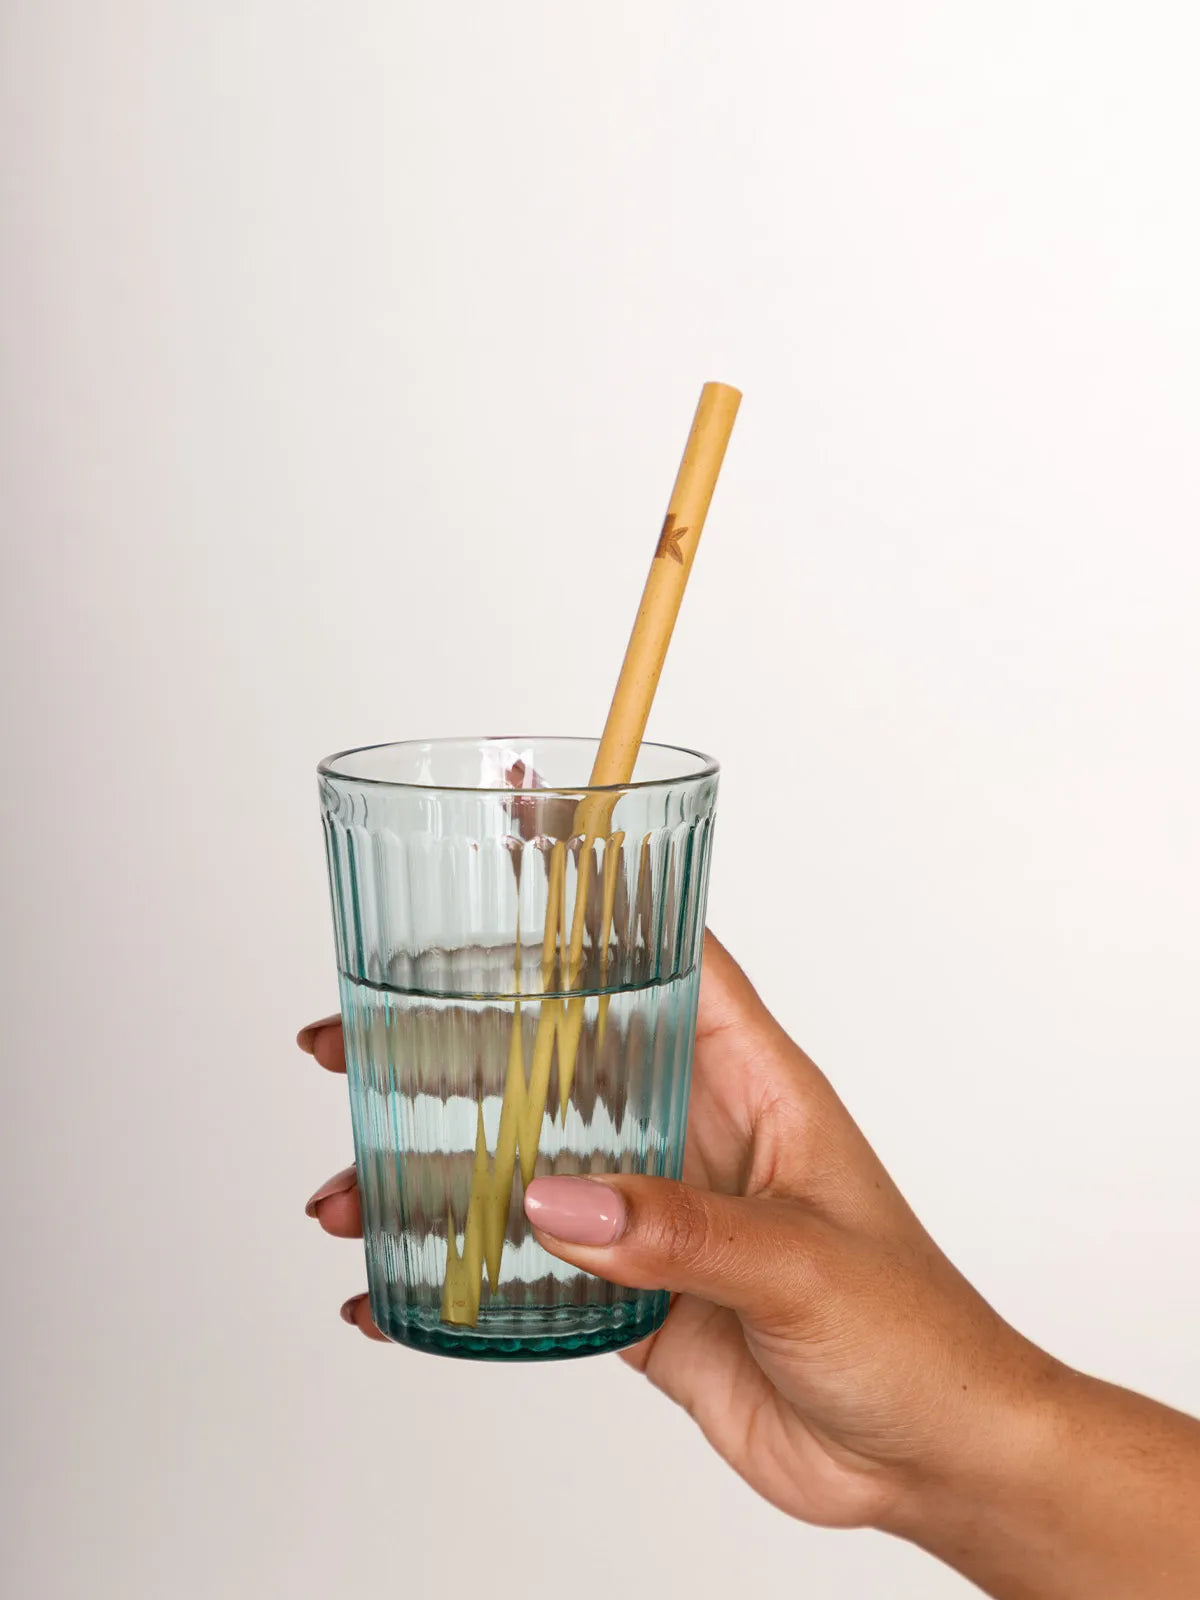 Reusable bamboo straws